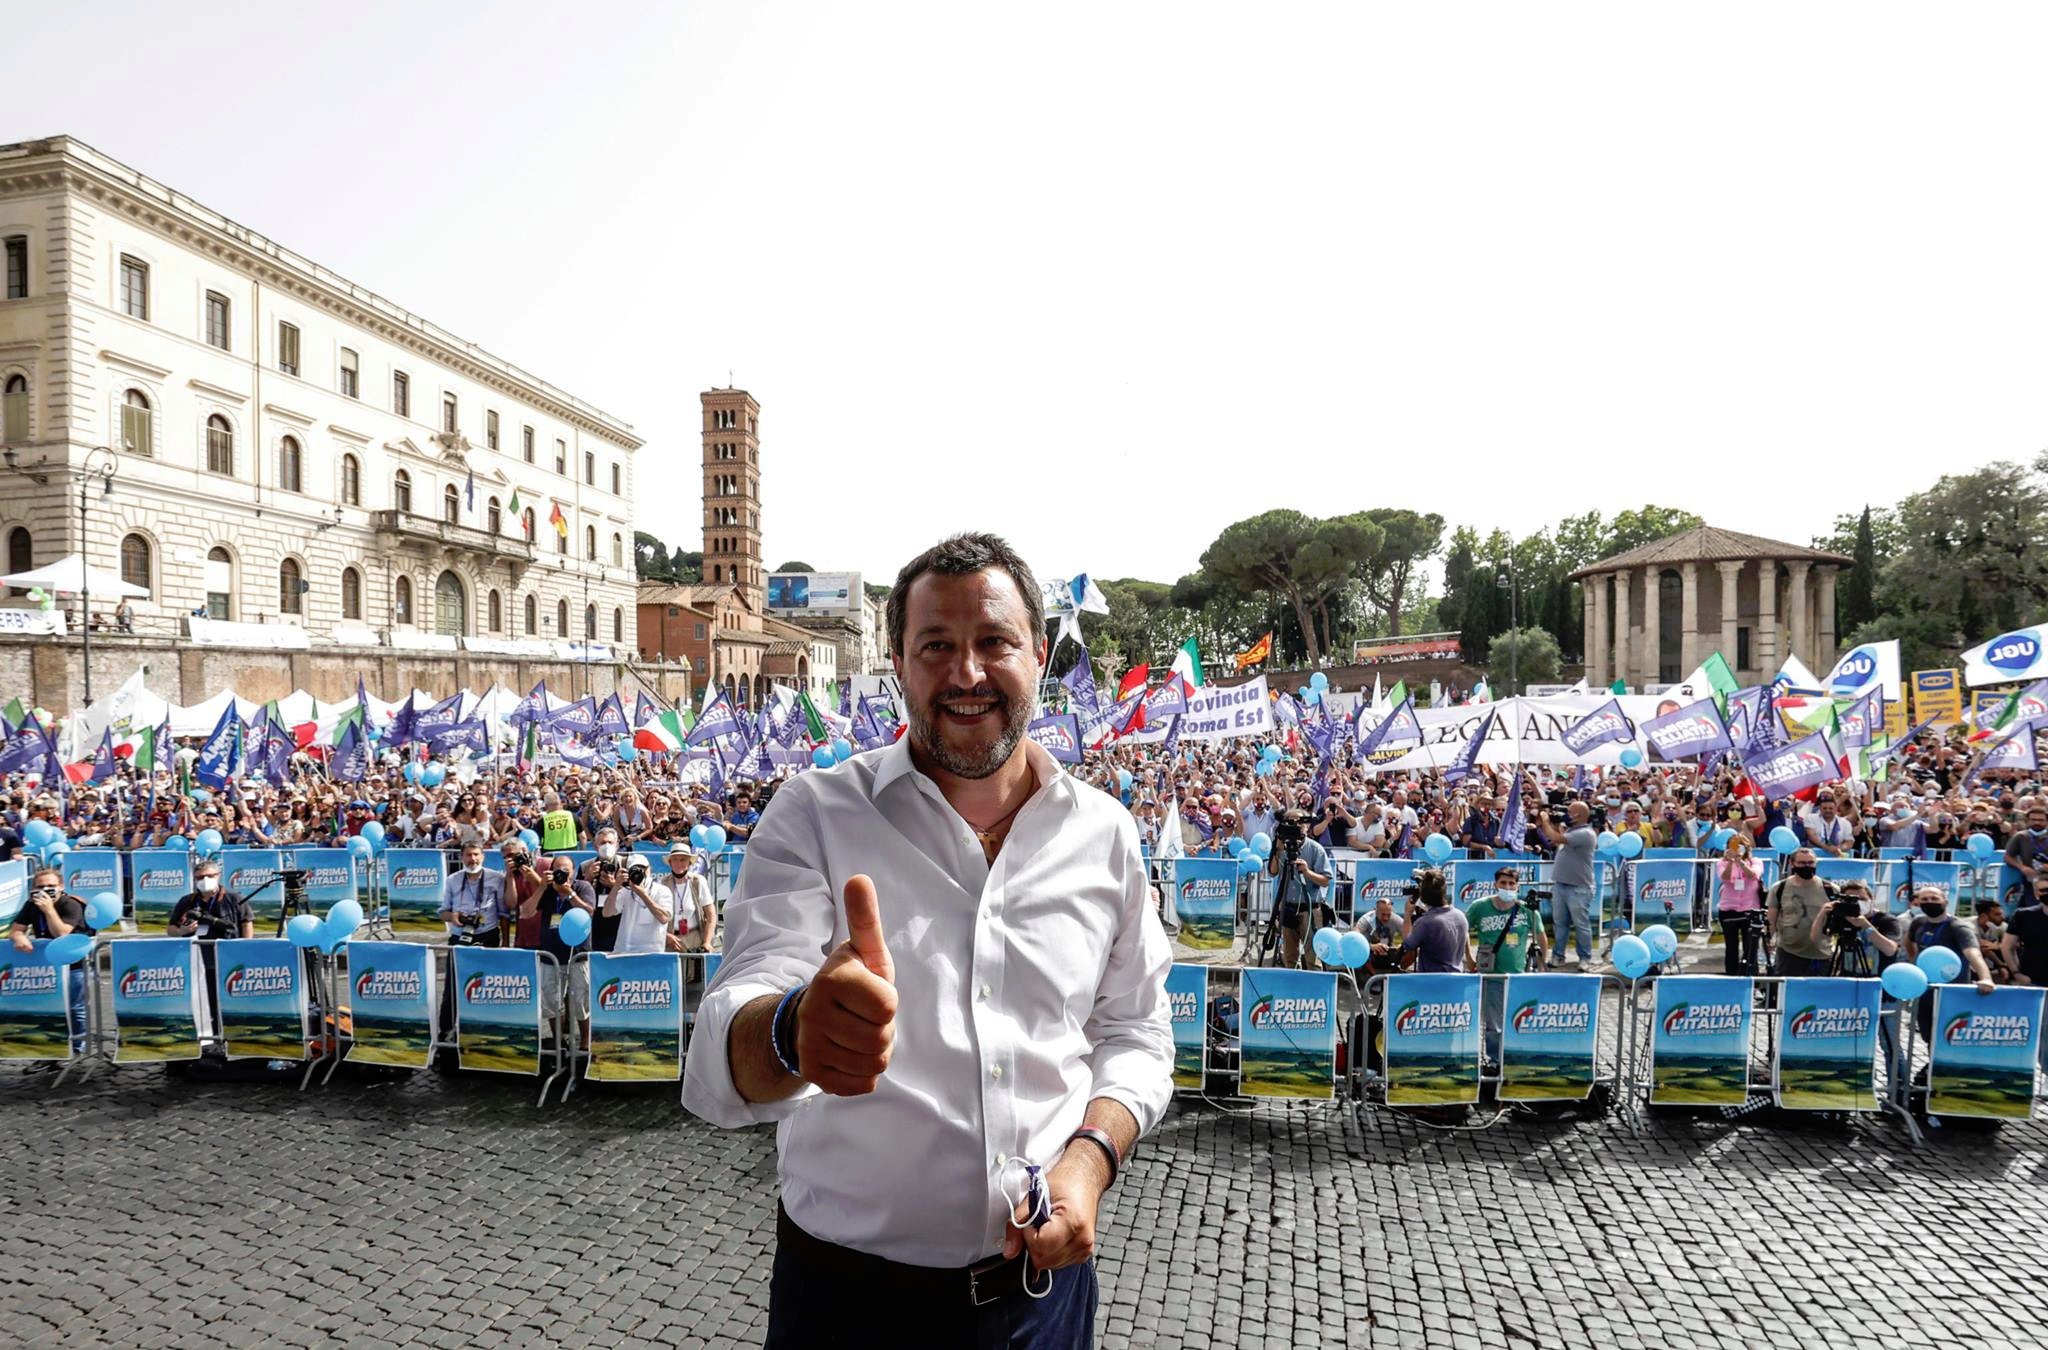 Lega in piazza, Salvini “avvisa” Anm: pronti per le firme. E rilancia unità centrodestra